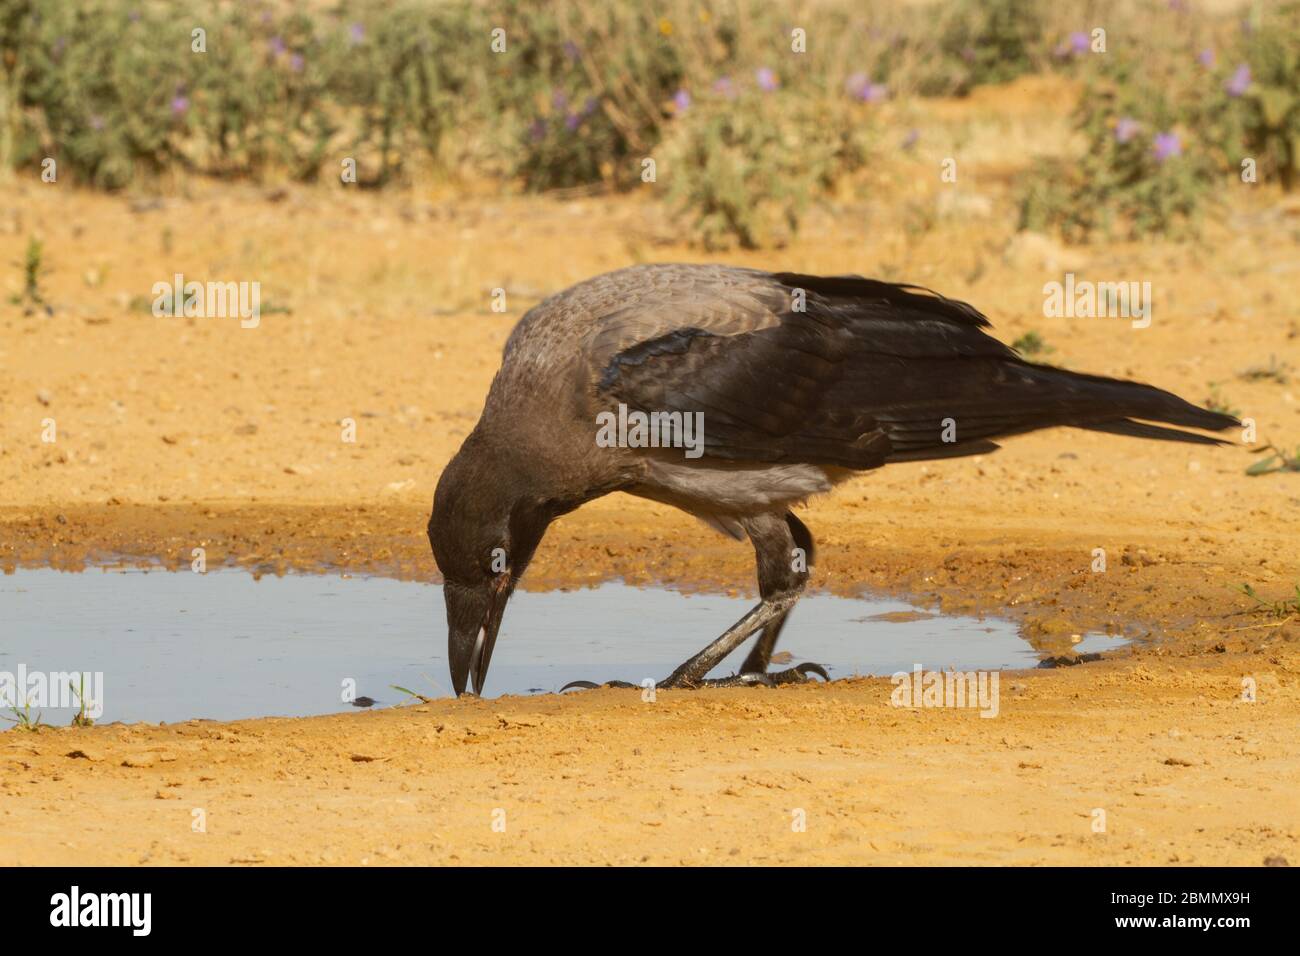 Kapuzenkrähe (Corvus cornix) am Wasser die Kapuzenkrähe ist ein weit verbreiteter Vogel, der in weiten Teilen Europas und des Nahen Ostens gefunden wird. Es ist ein omnivorous s Stockfoto